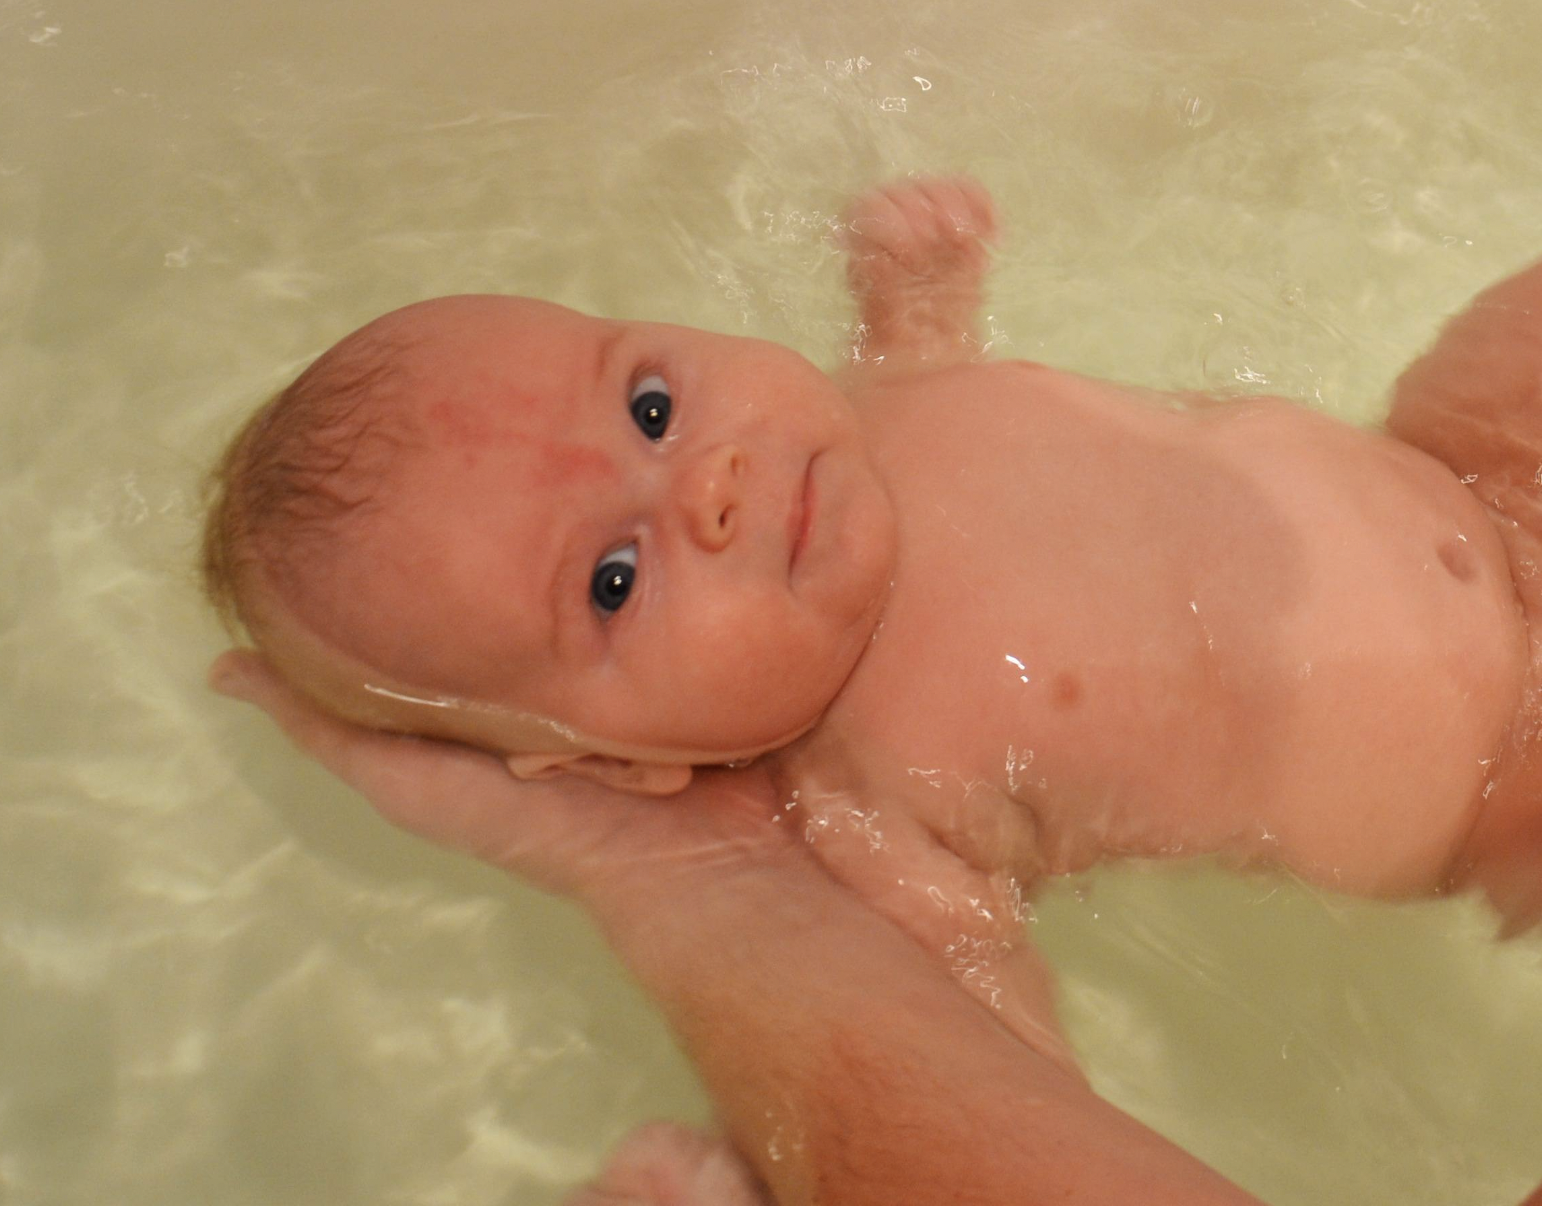 El bebé es bañado en una bañera | Fuente: Flickr